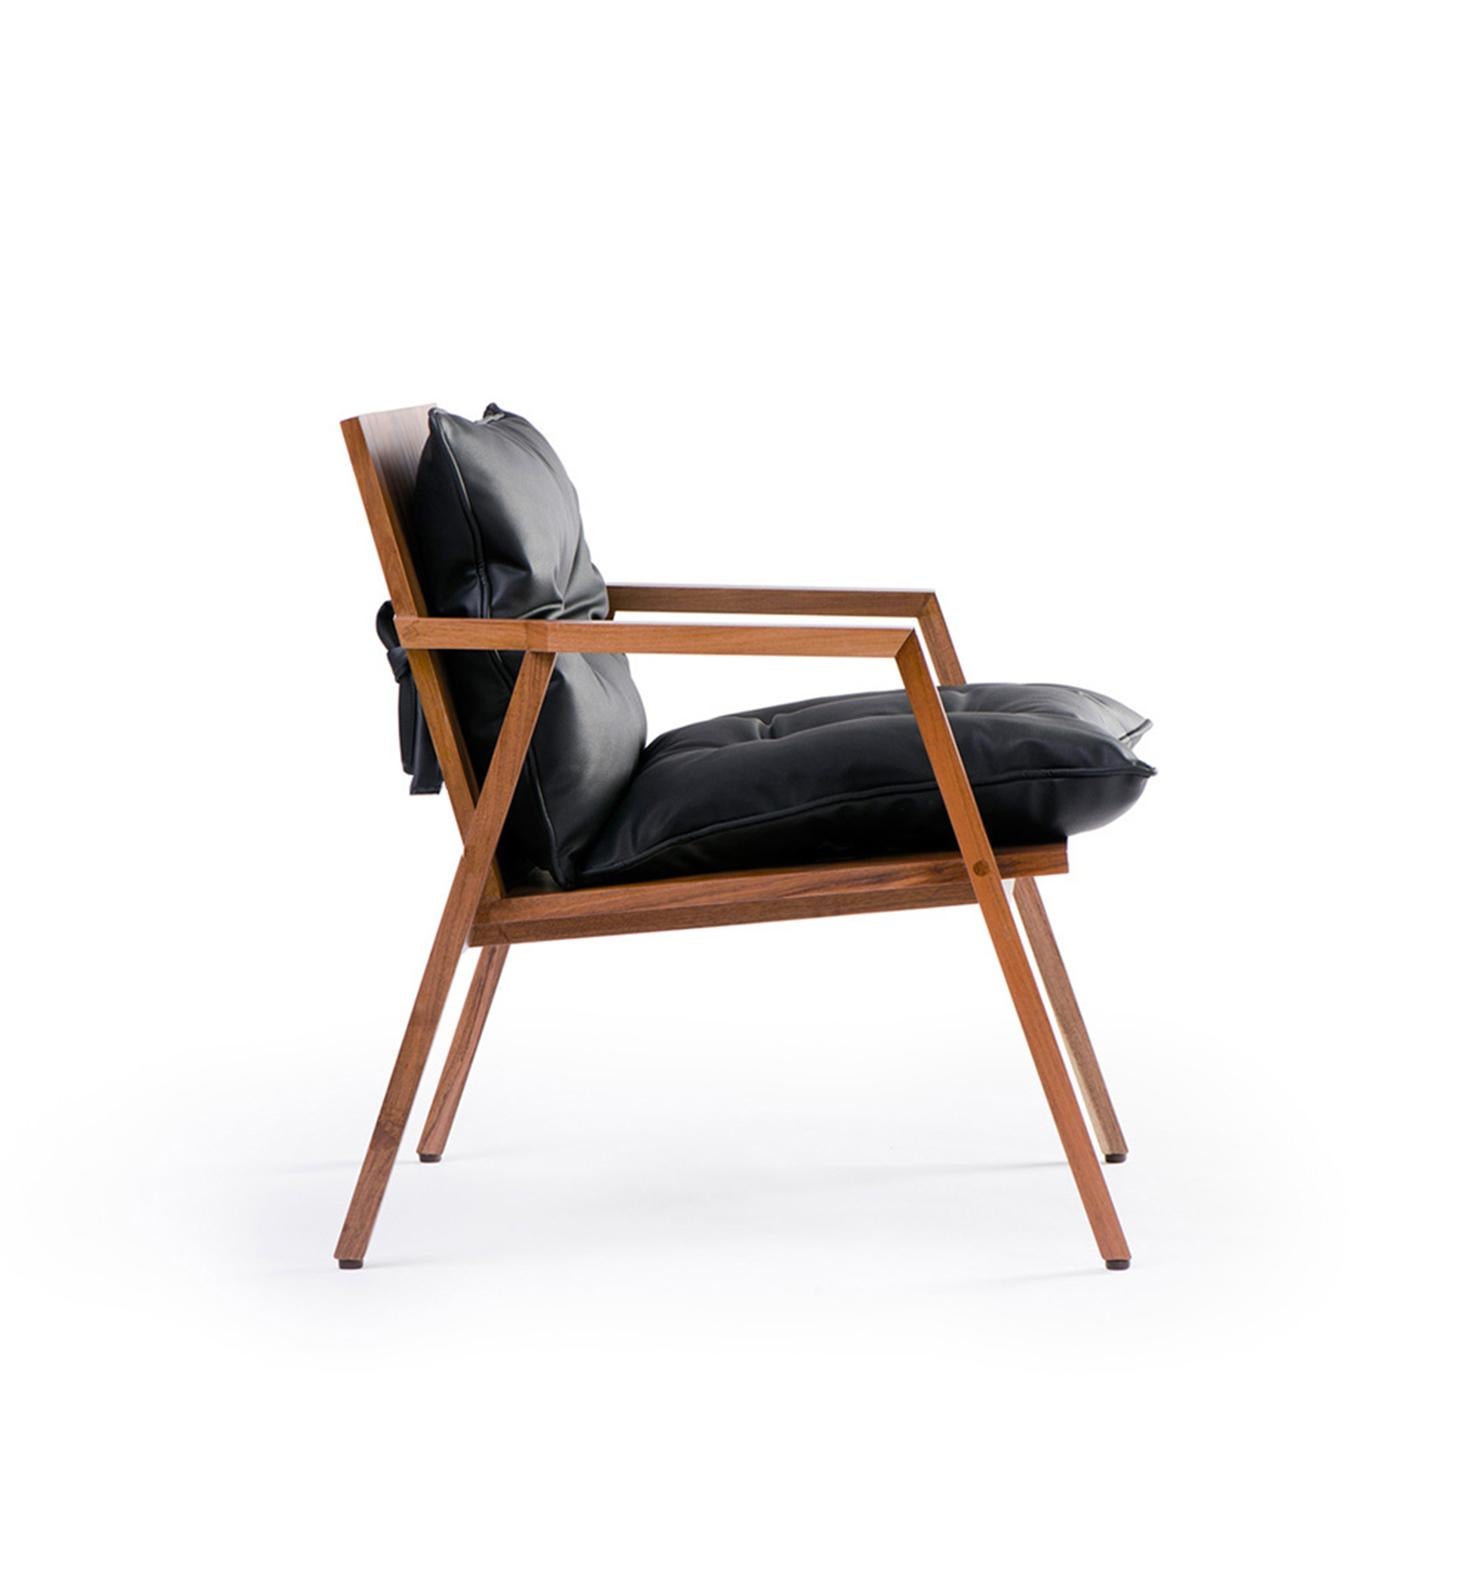 Dedo Chair, mexikanischer zeitgenössischer Stuhl von Emiliano Molina für CUCHARA

Aus diesem zeitlosen Stuhl ist die Collection'S entstanden. Ein einfaches, starkes, kompaktes und vielseitiges Stück, bei dem wir zunächst die Winkel, Verbindungen und